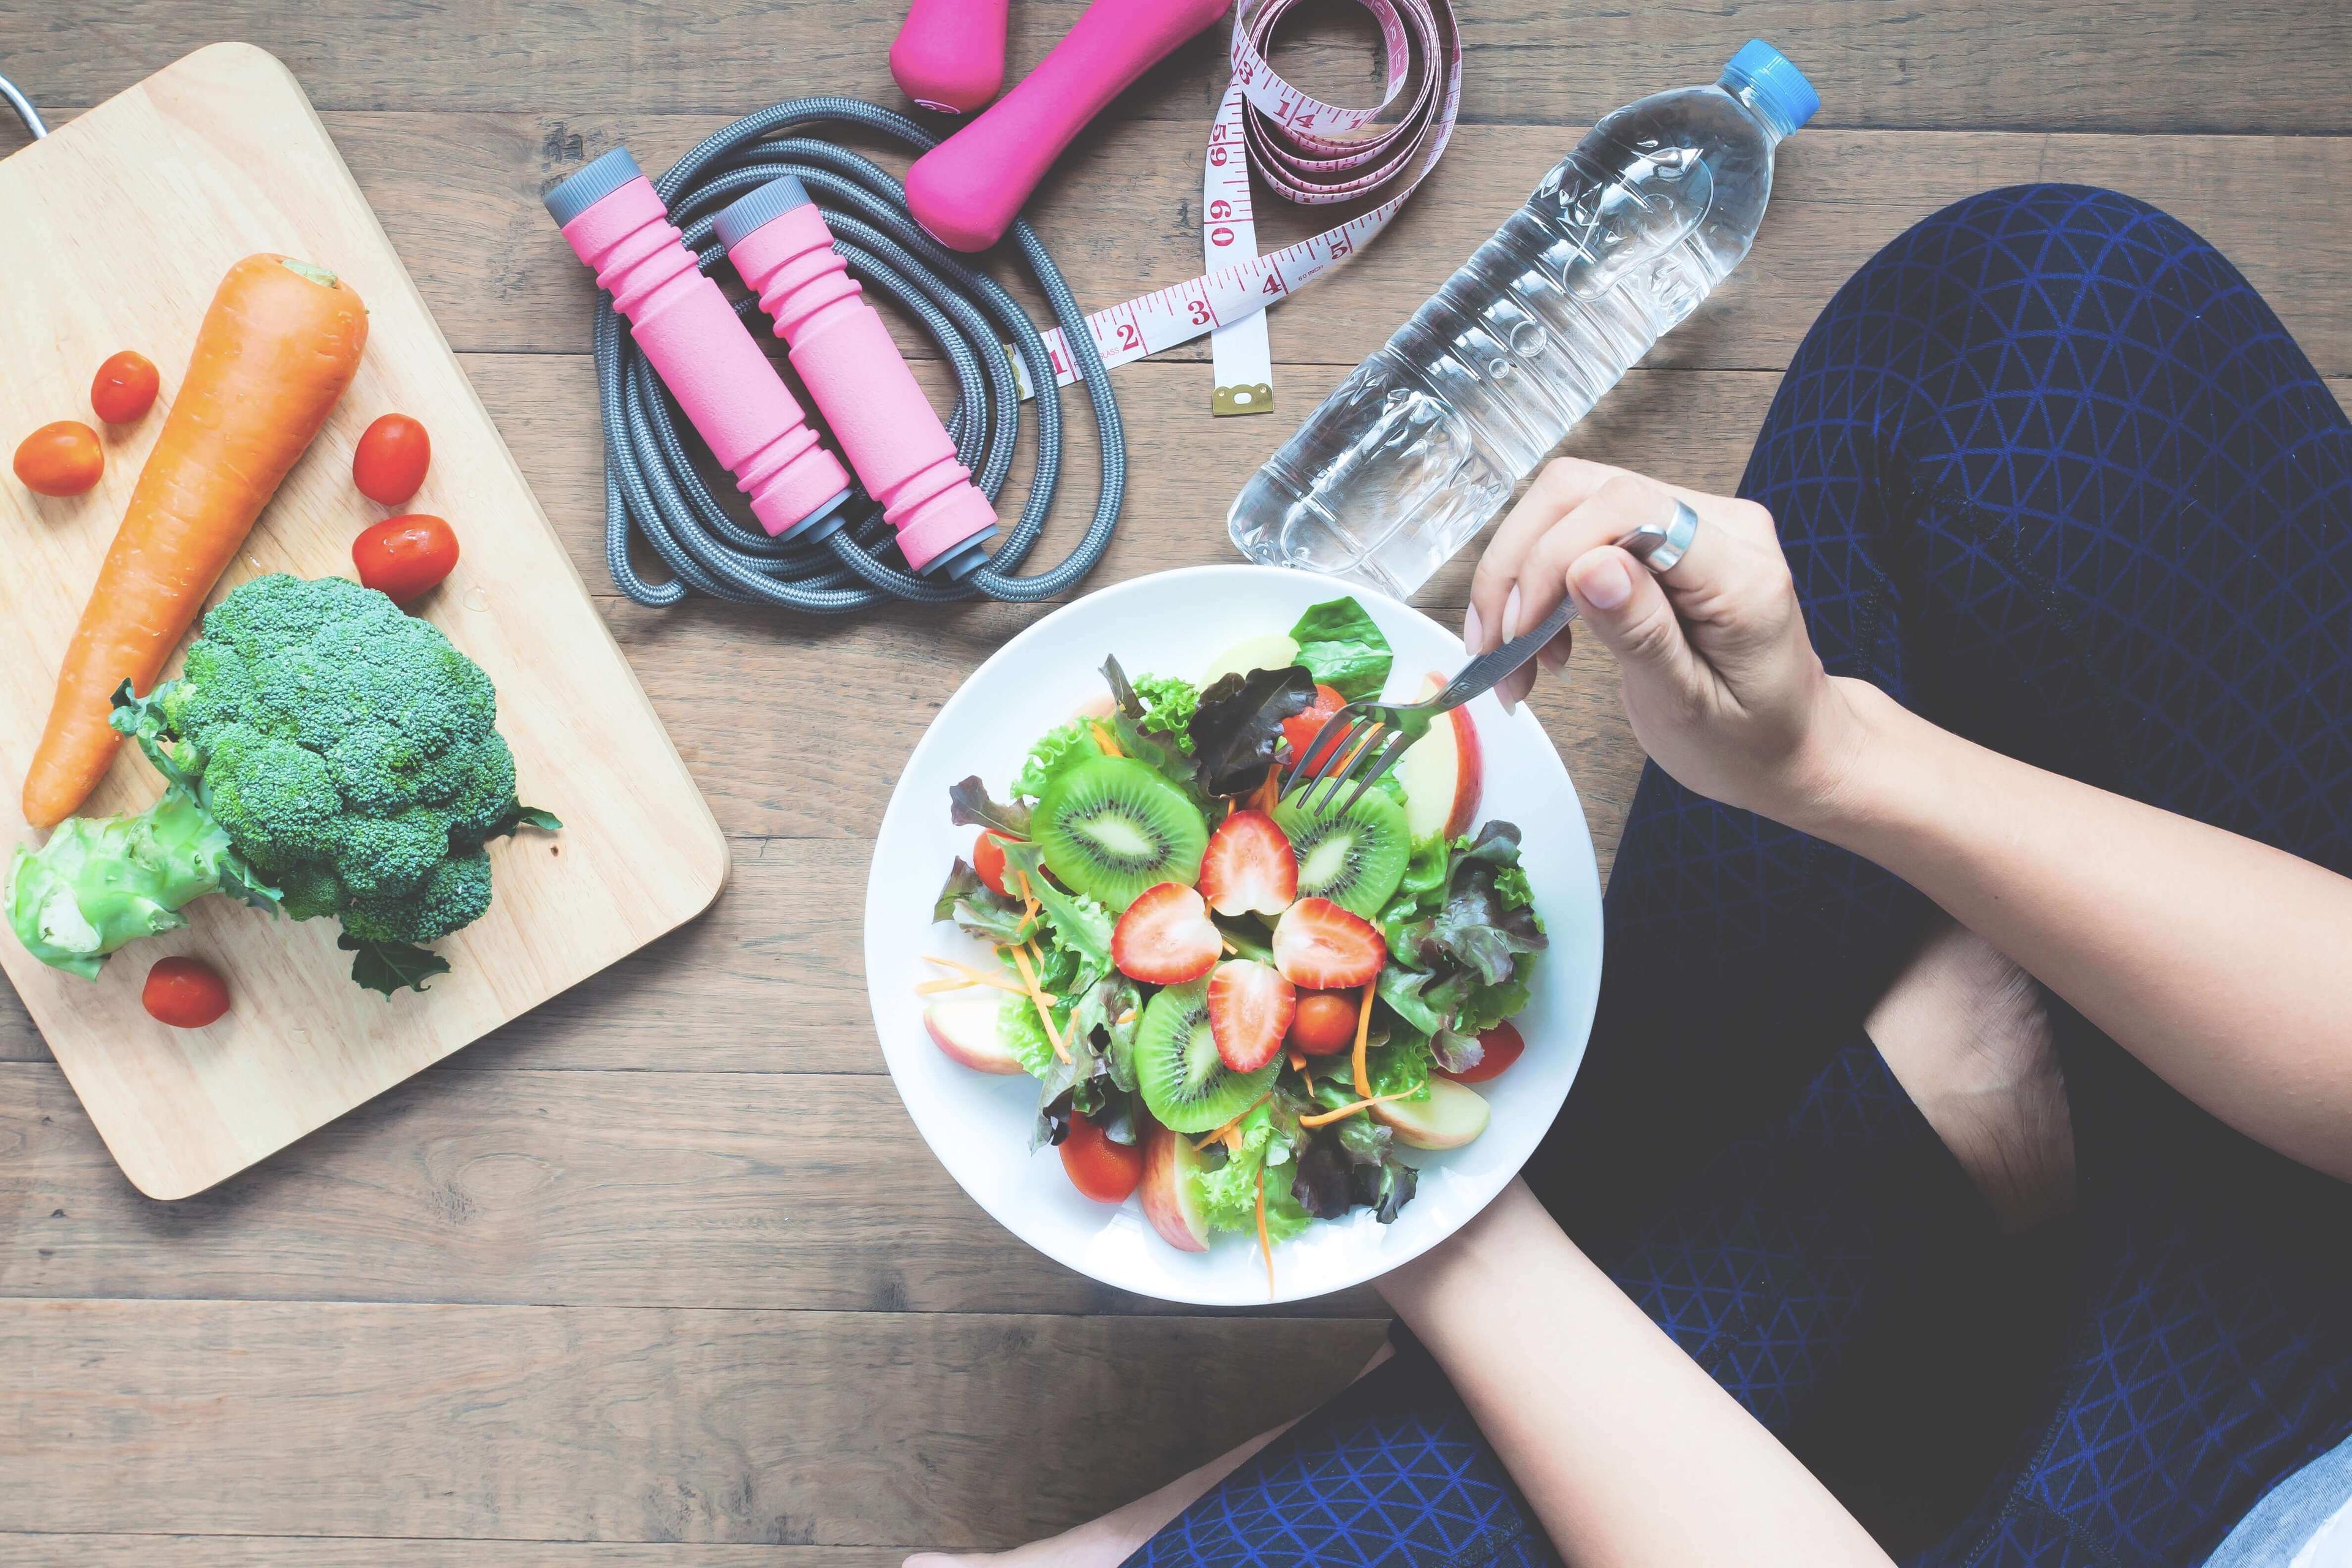 तुमचे अन्न आणि जीवनशैली निवडी तुमच्या रोगप्रतिकारक शक्तीशी तडजोड करत आहेत का?